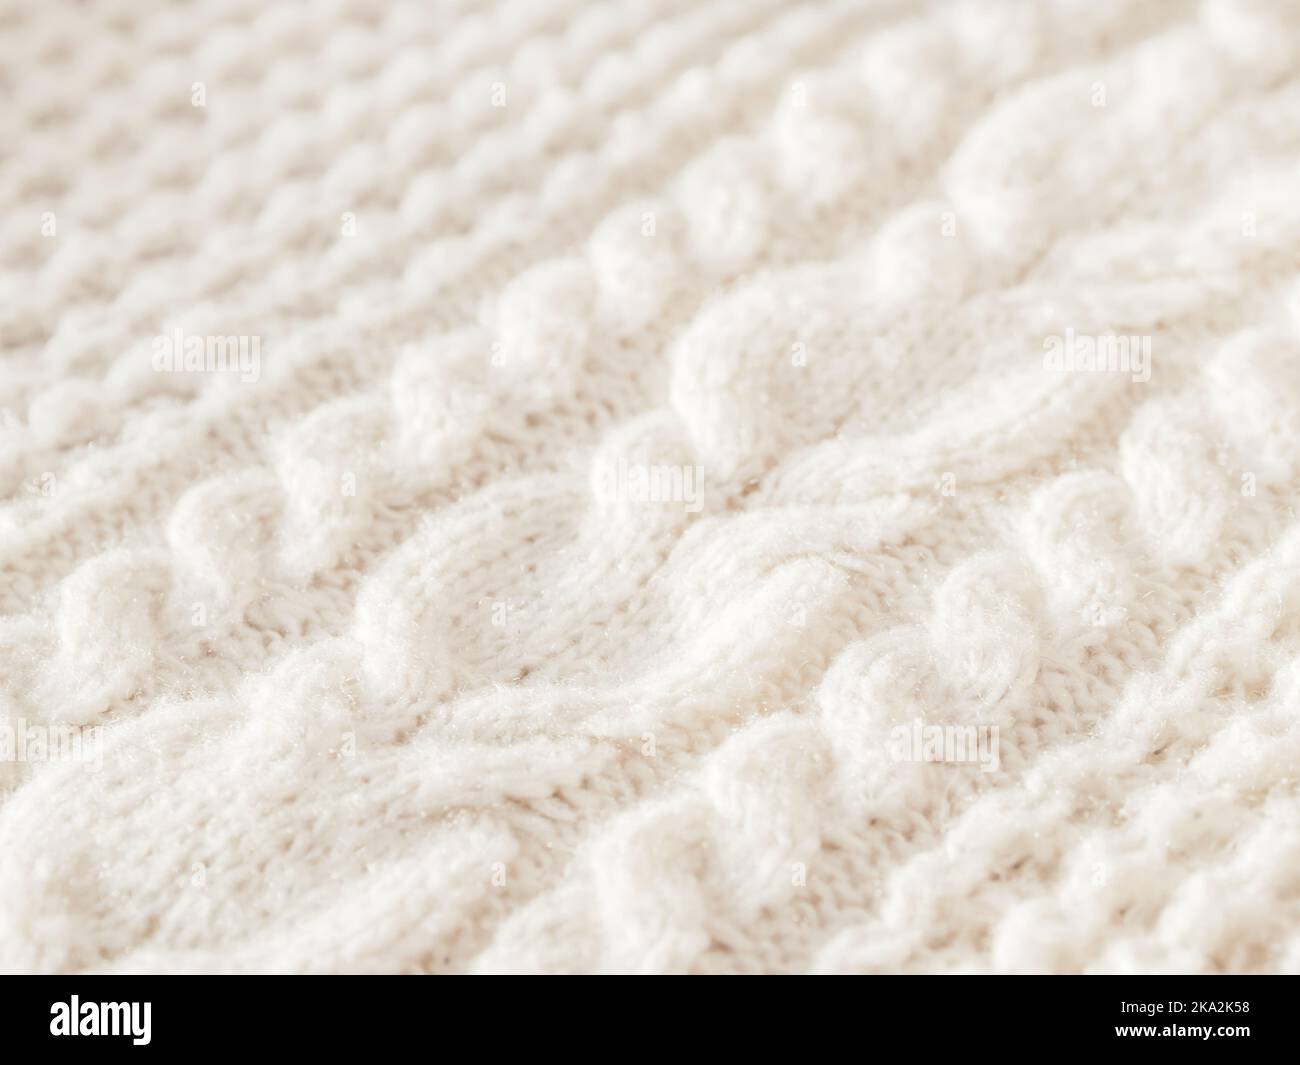 Maglione a maglia a cavo realizzato a mano. Texture di tessuto caldo lavorato a maglia con motivo. Cardigan bianco. Intimo vestito autunnale per un clima sereno. Foto Stock